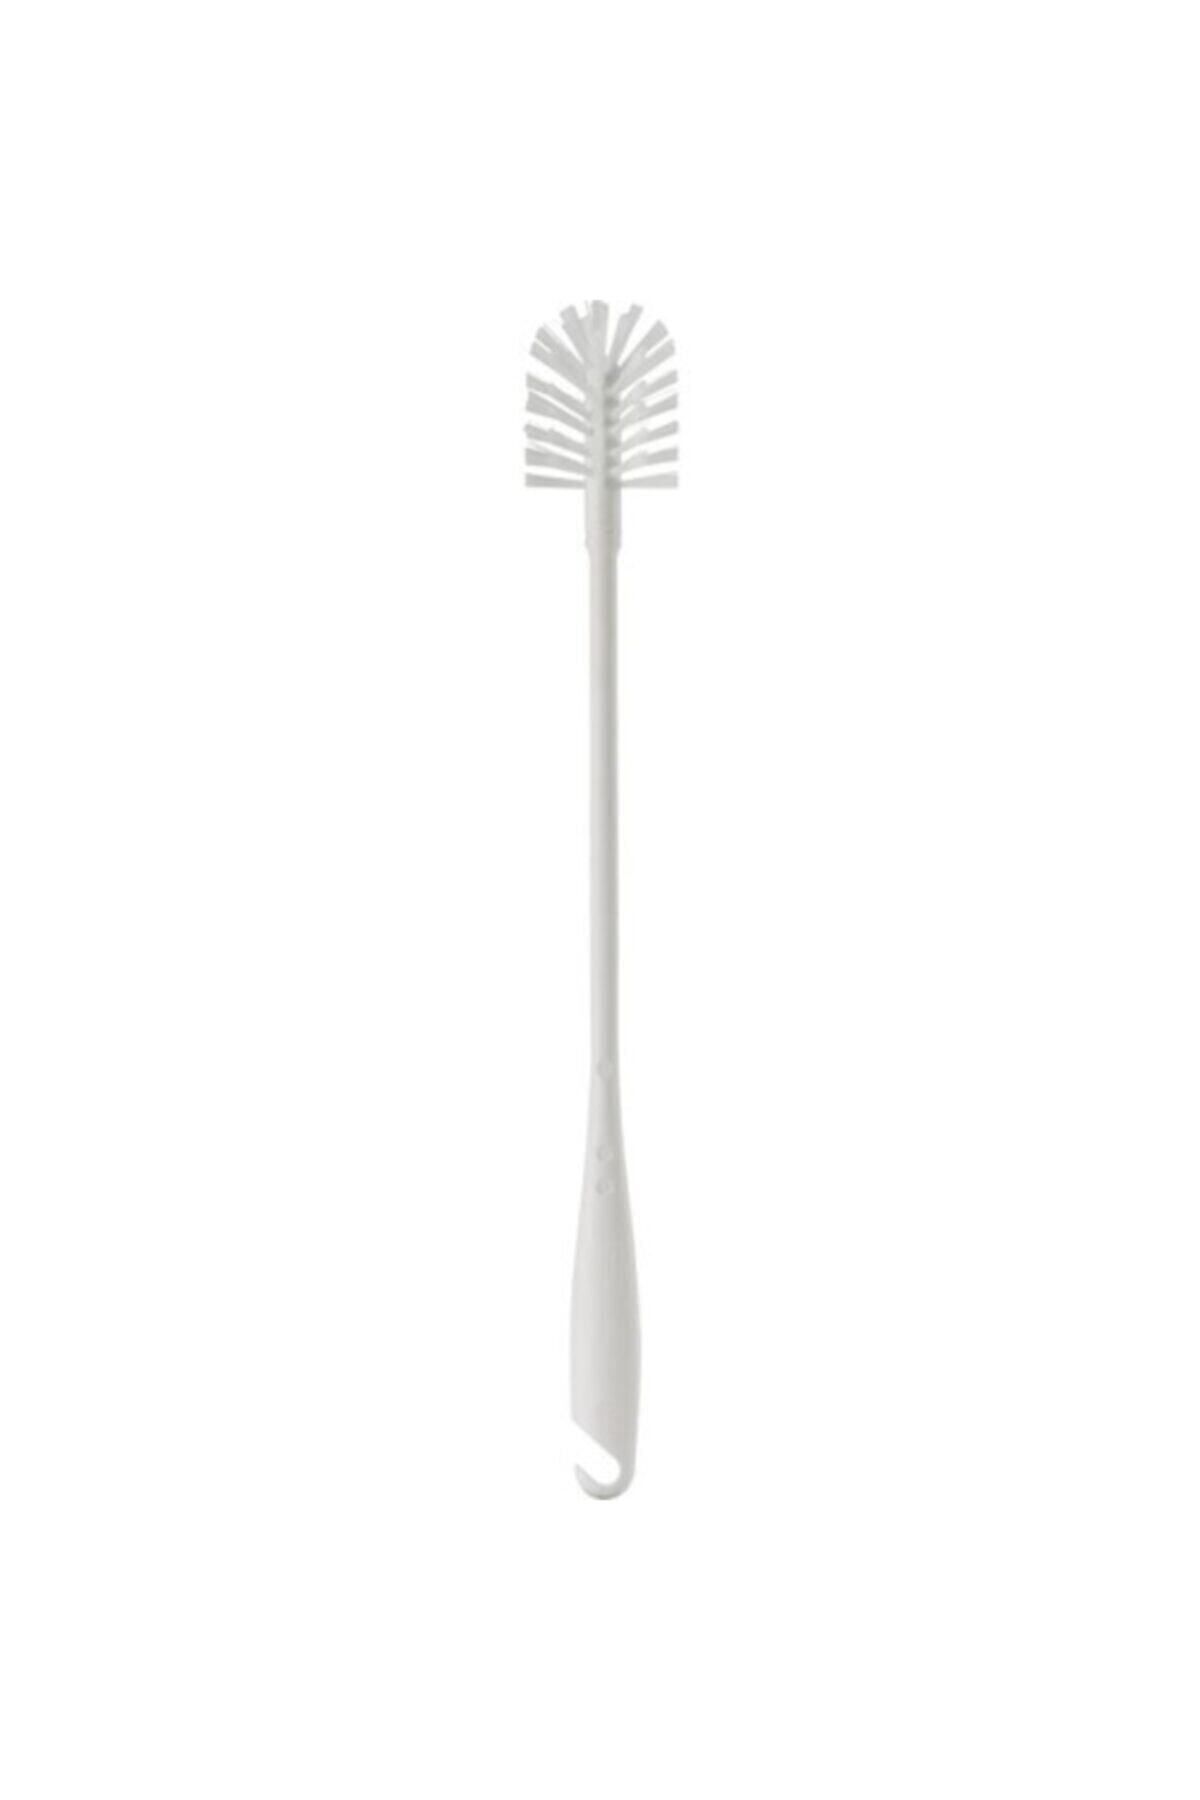 IKEA Medelvag Şişe Kavanoz Bulaşık Temizleme Fırçası